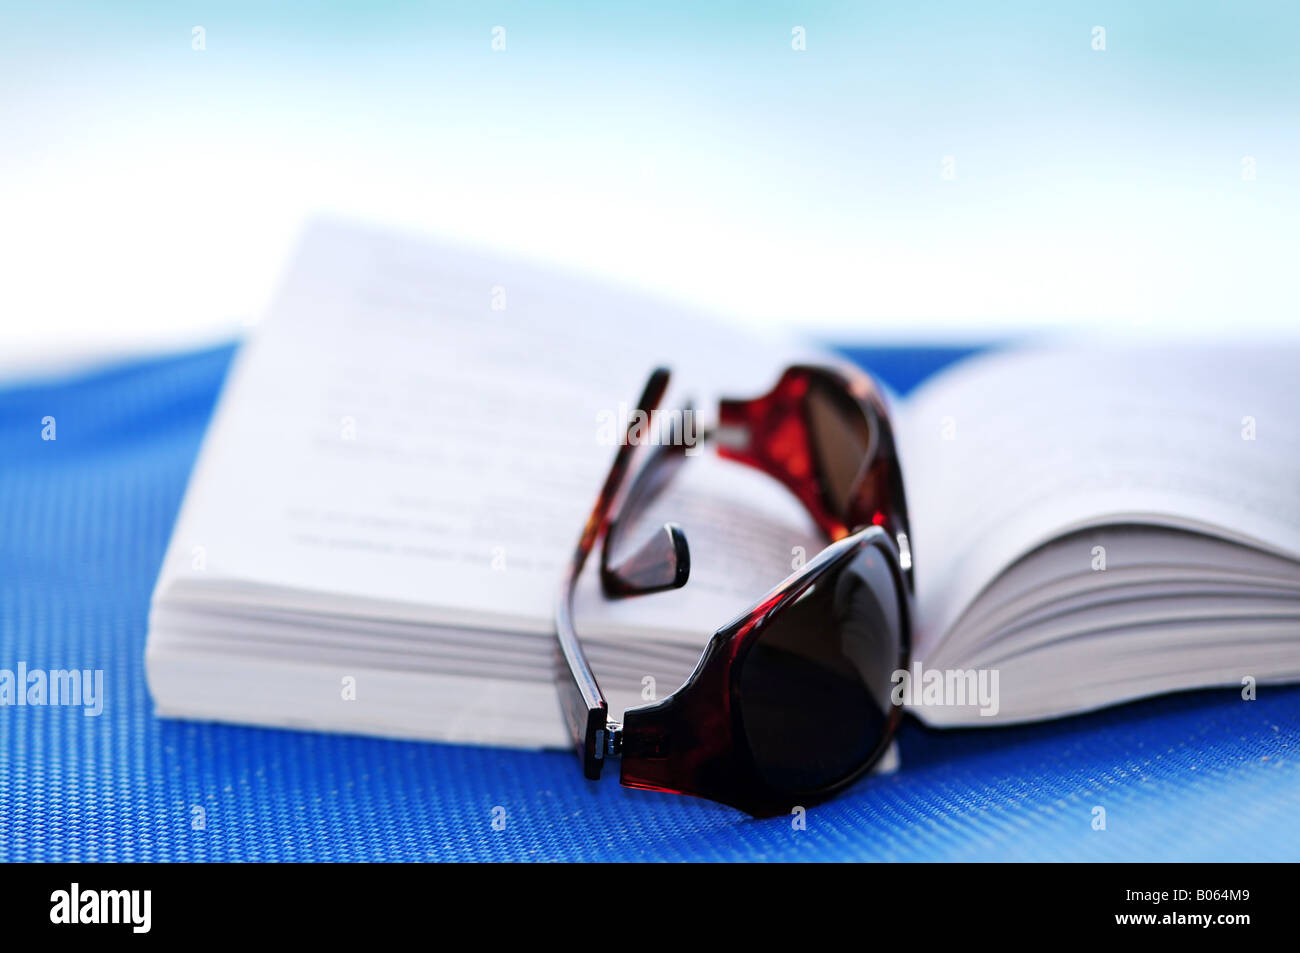 Sonnenbrillen und offenes Buch am Strand Stuhl Sommer Urlaub Konzept Stockfoto